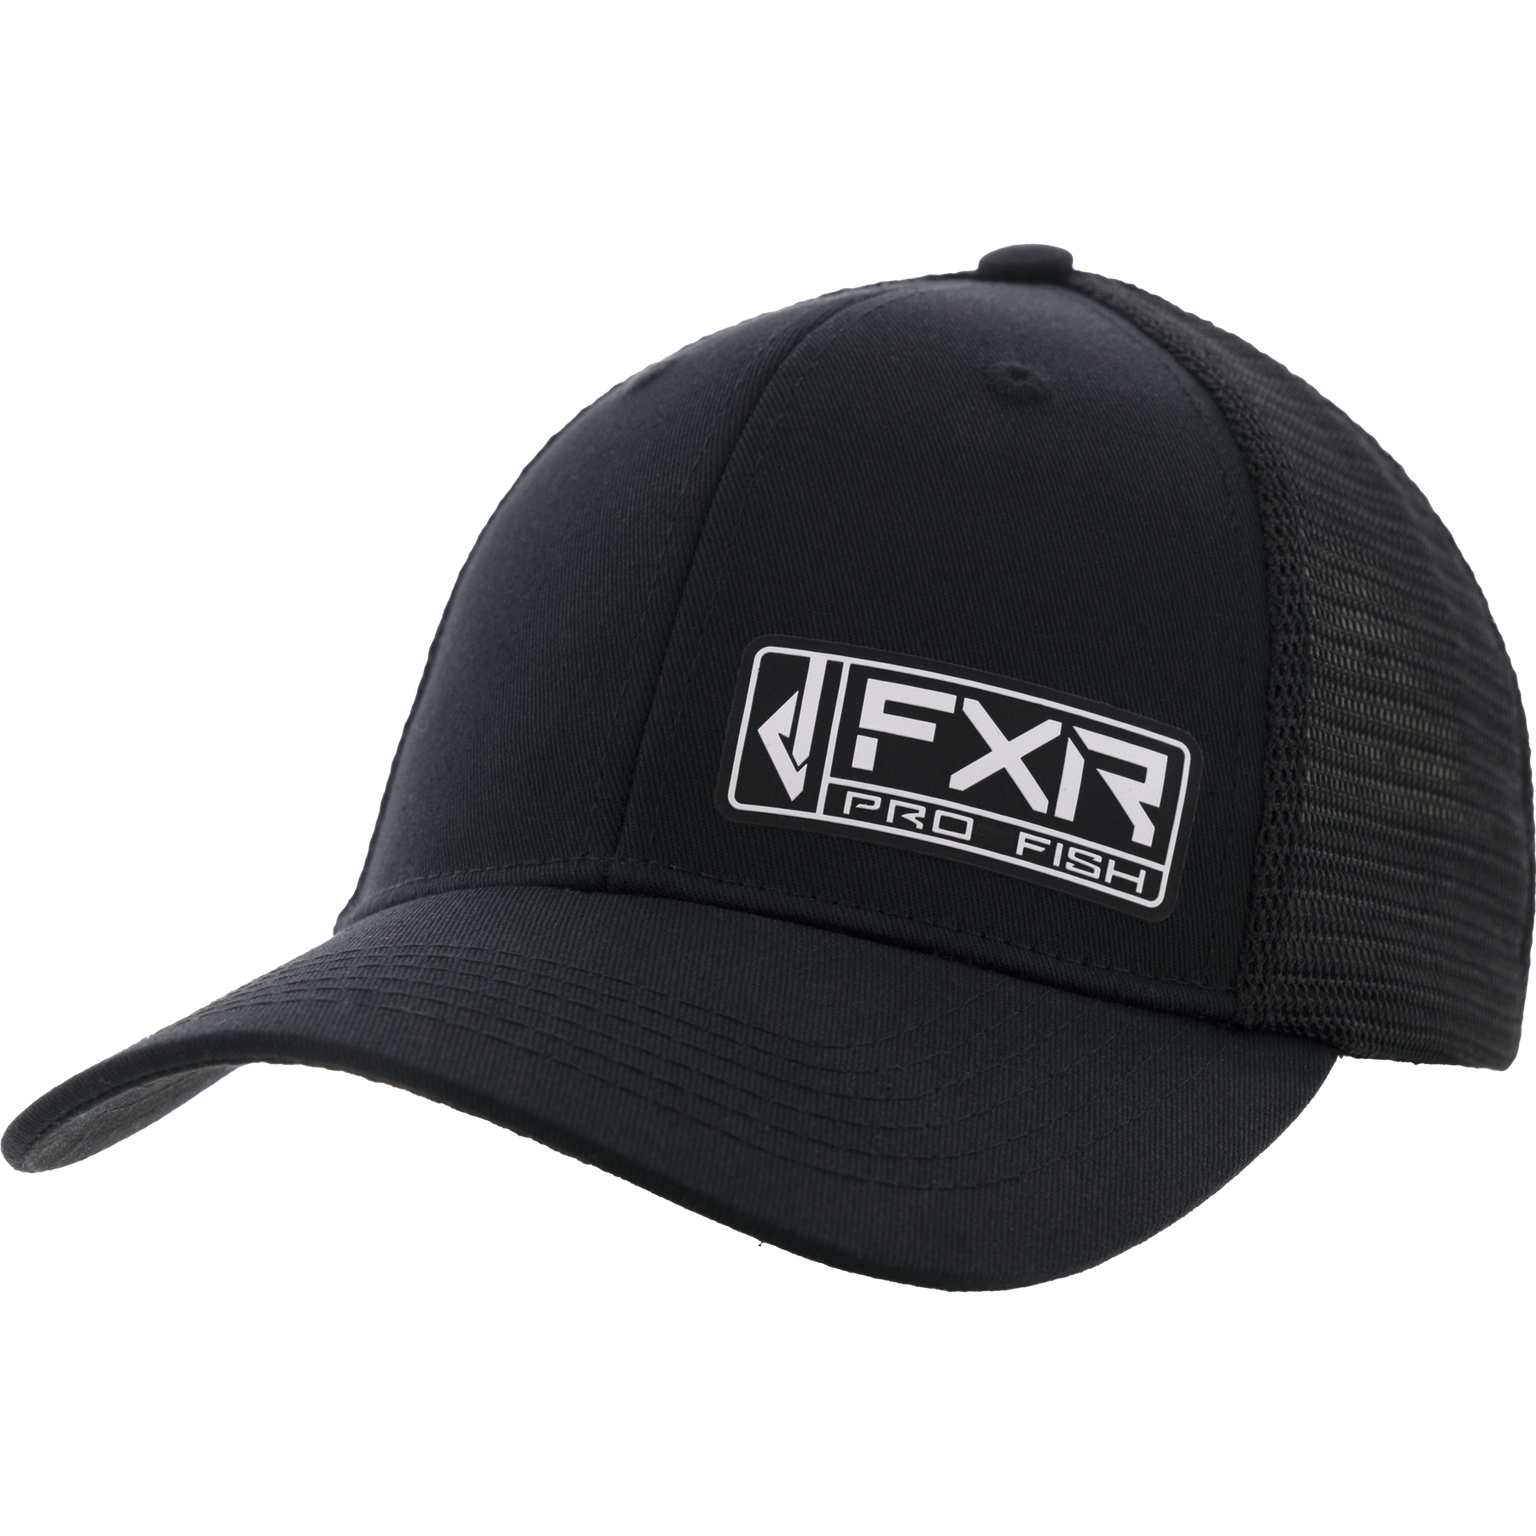 fxr racing hats adult cast flexfit - casual